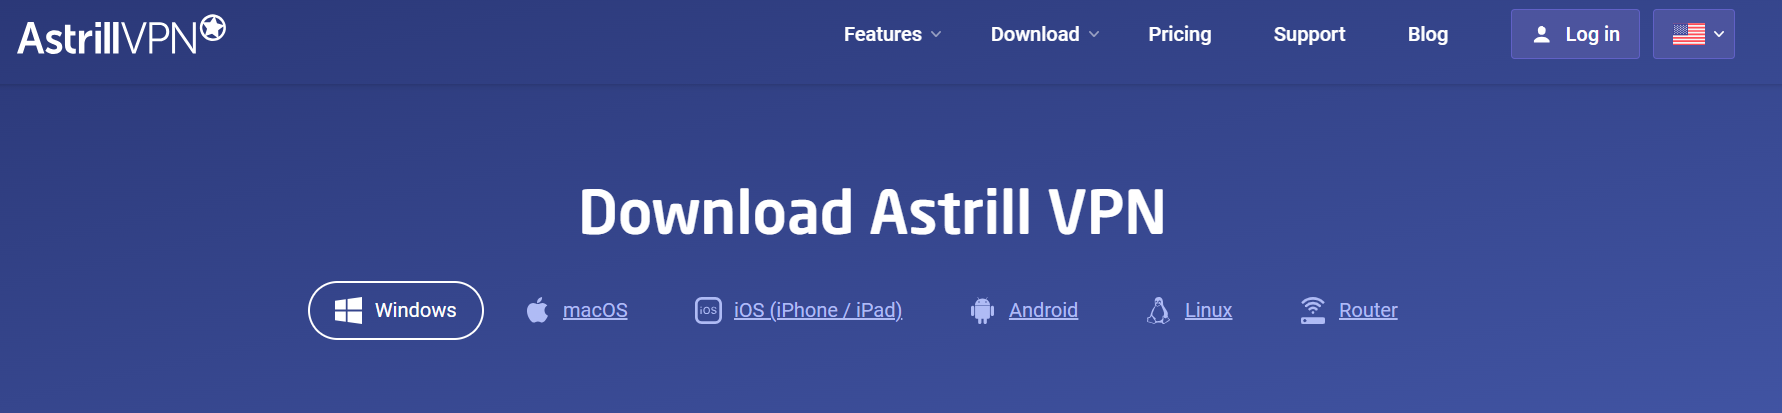 install AstrillVPN 